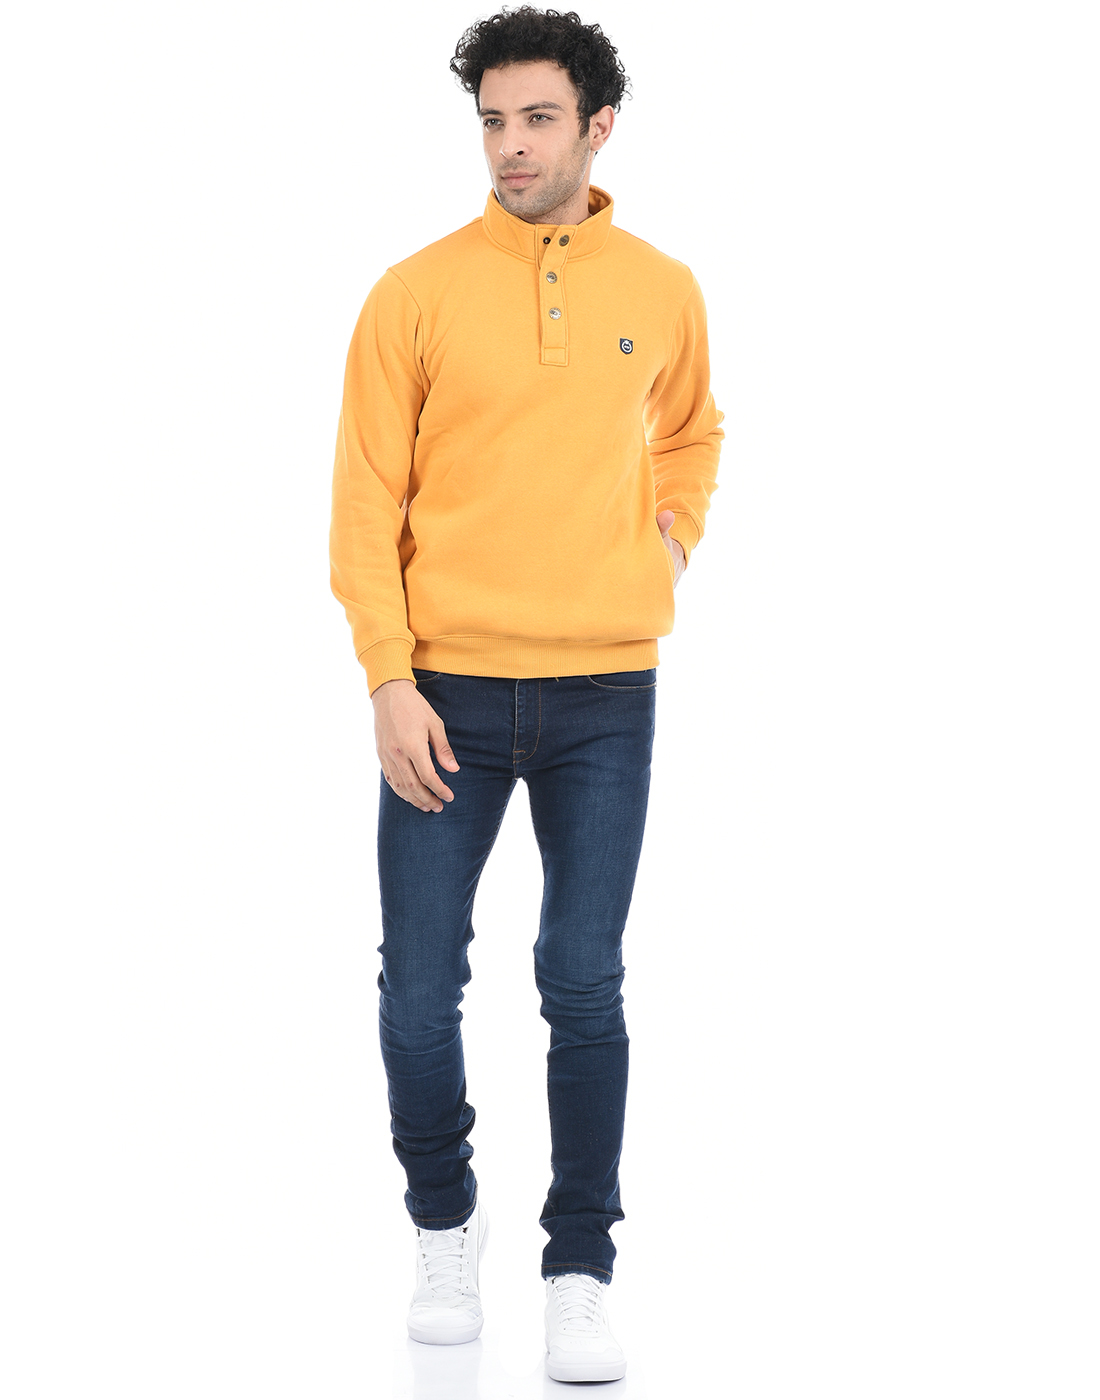 Cloak & Decker by Monte Carlo Men Solid Yellow Sweatshirt